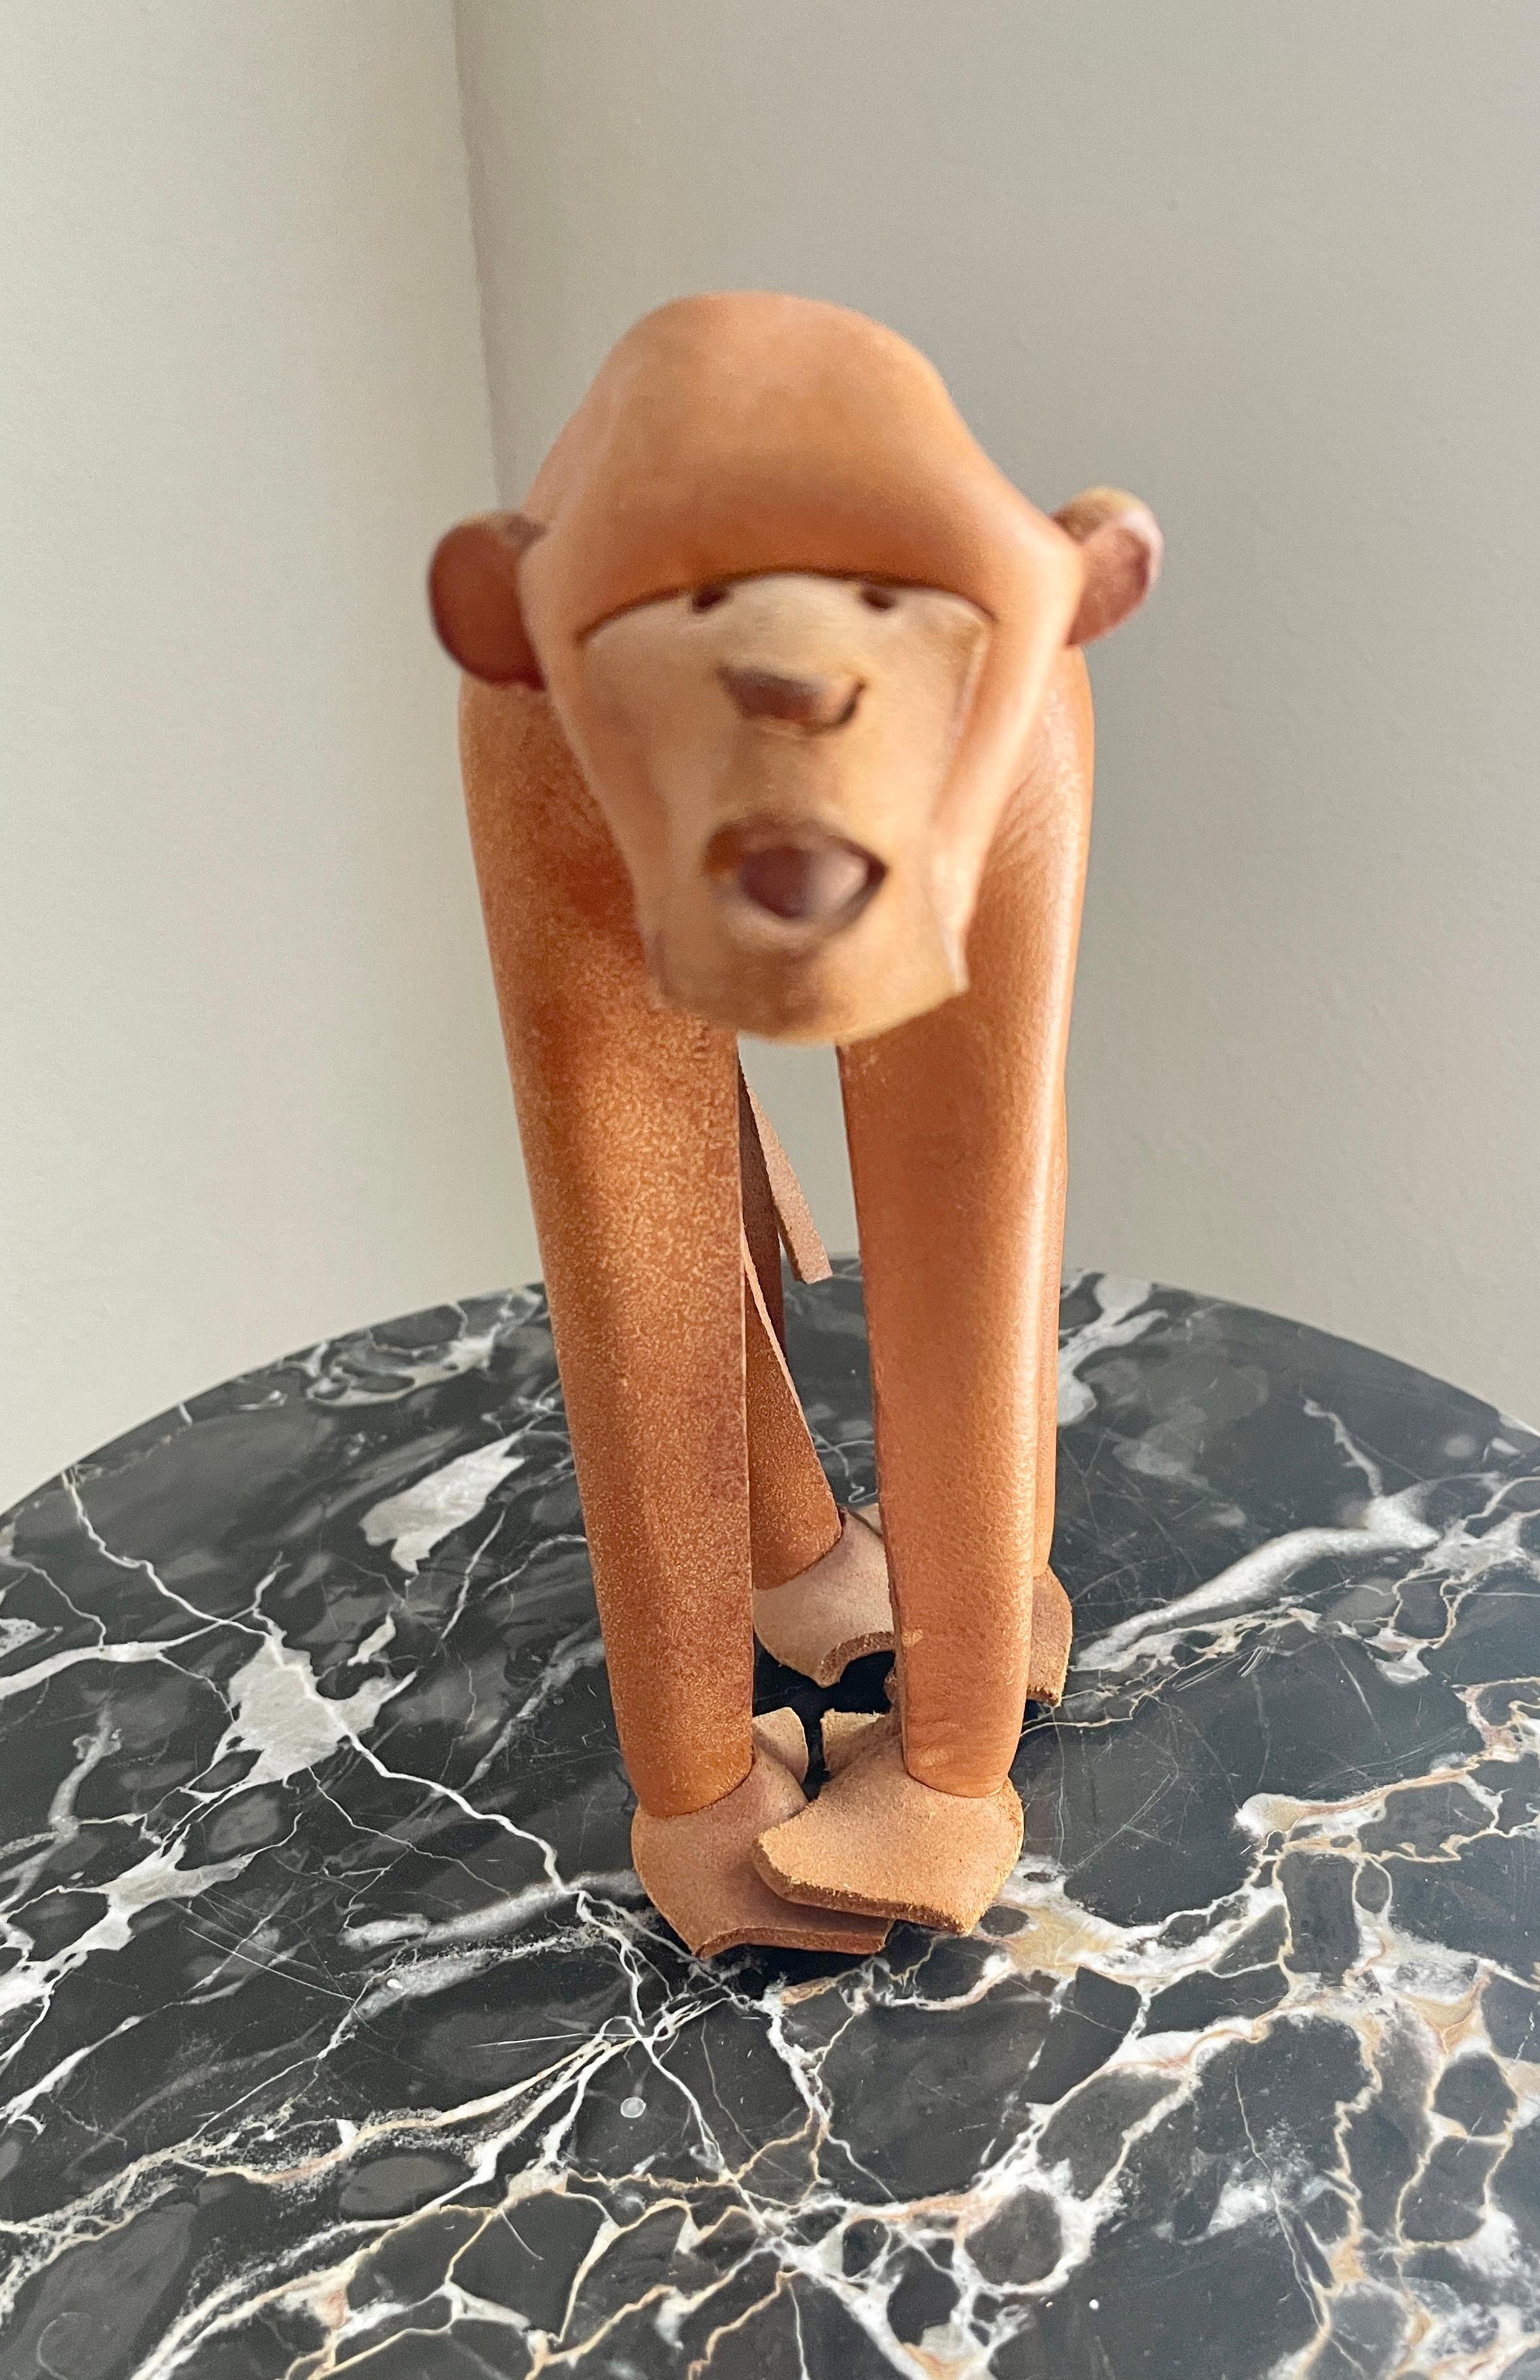 A Handmade German leather monkey sculpture by Deru.